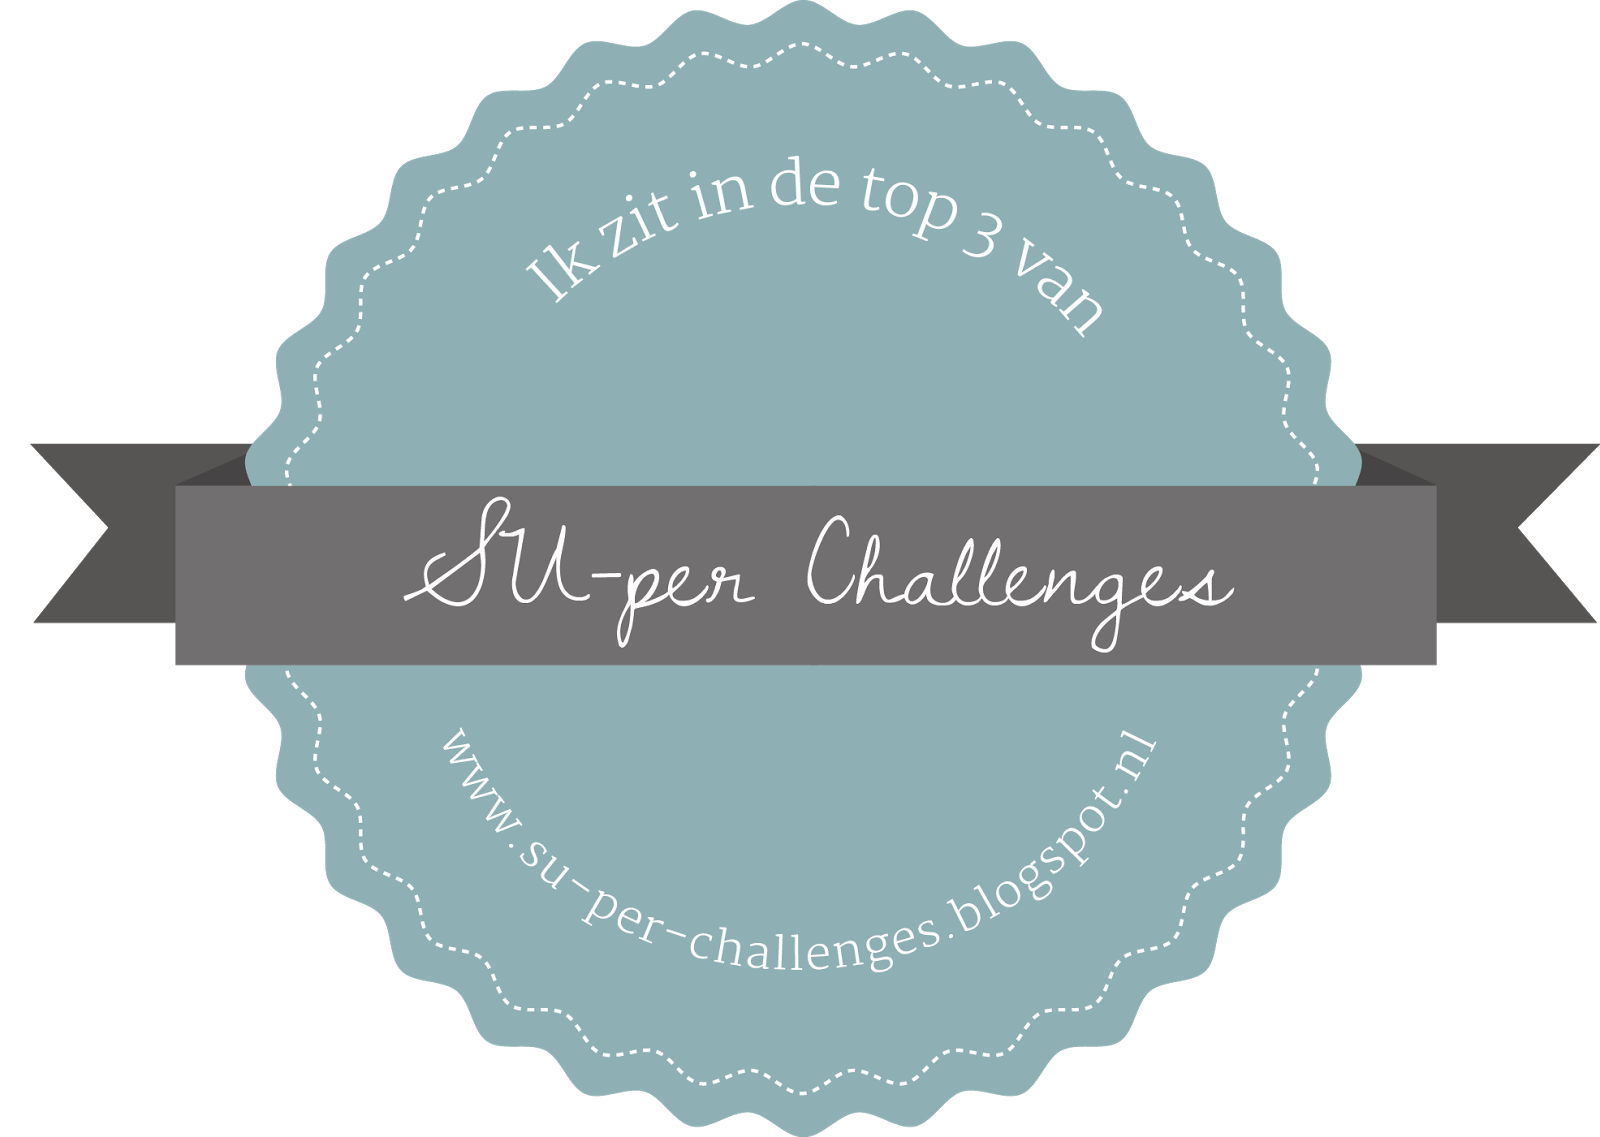 Top-3 SUper Challenges